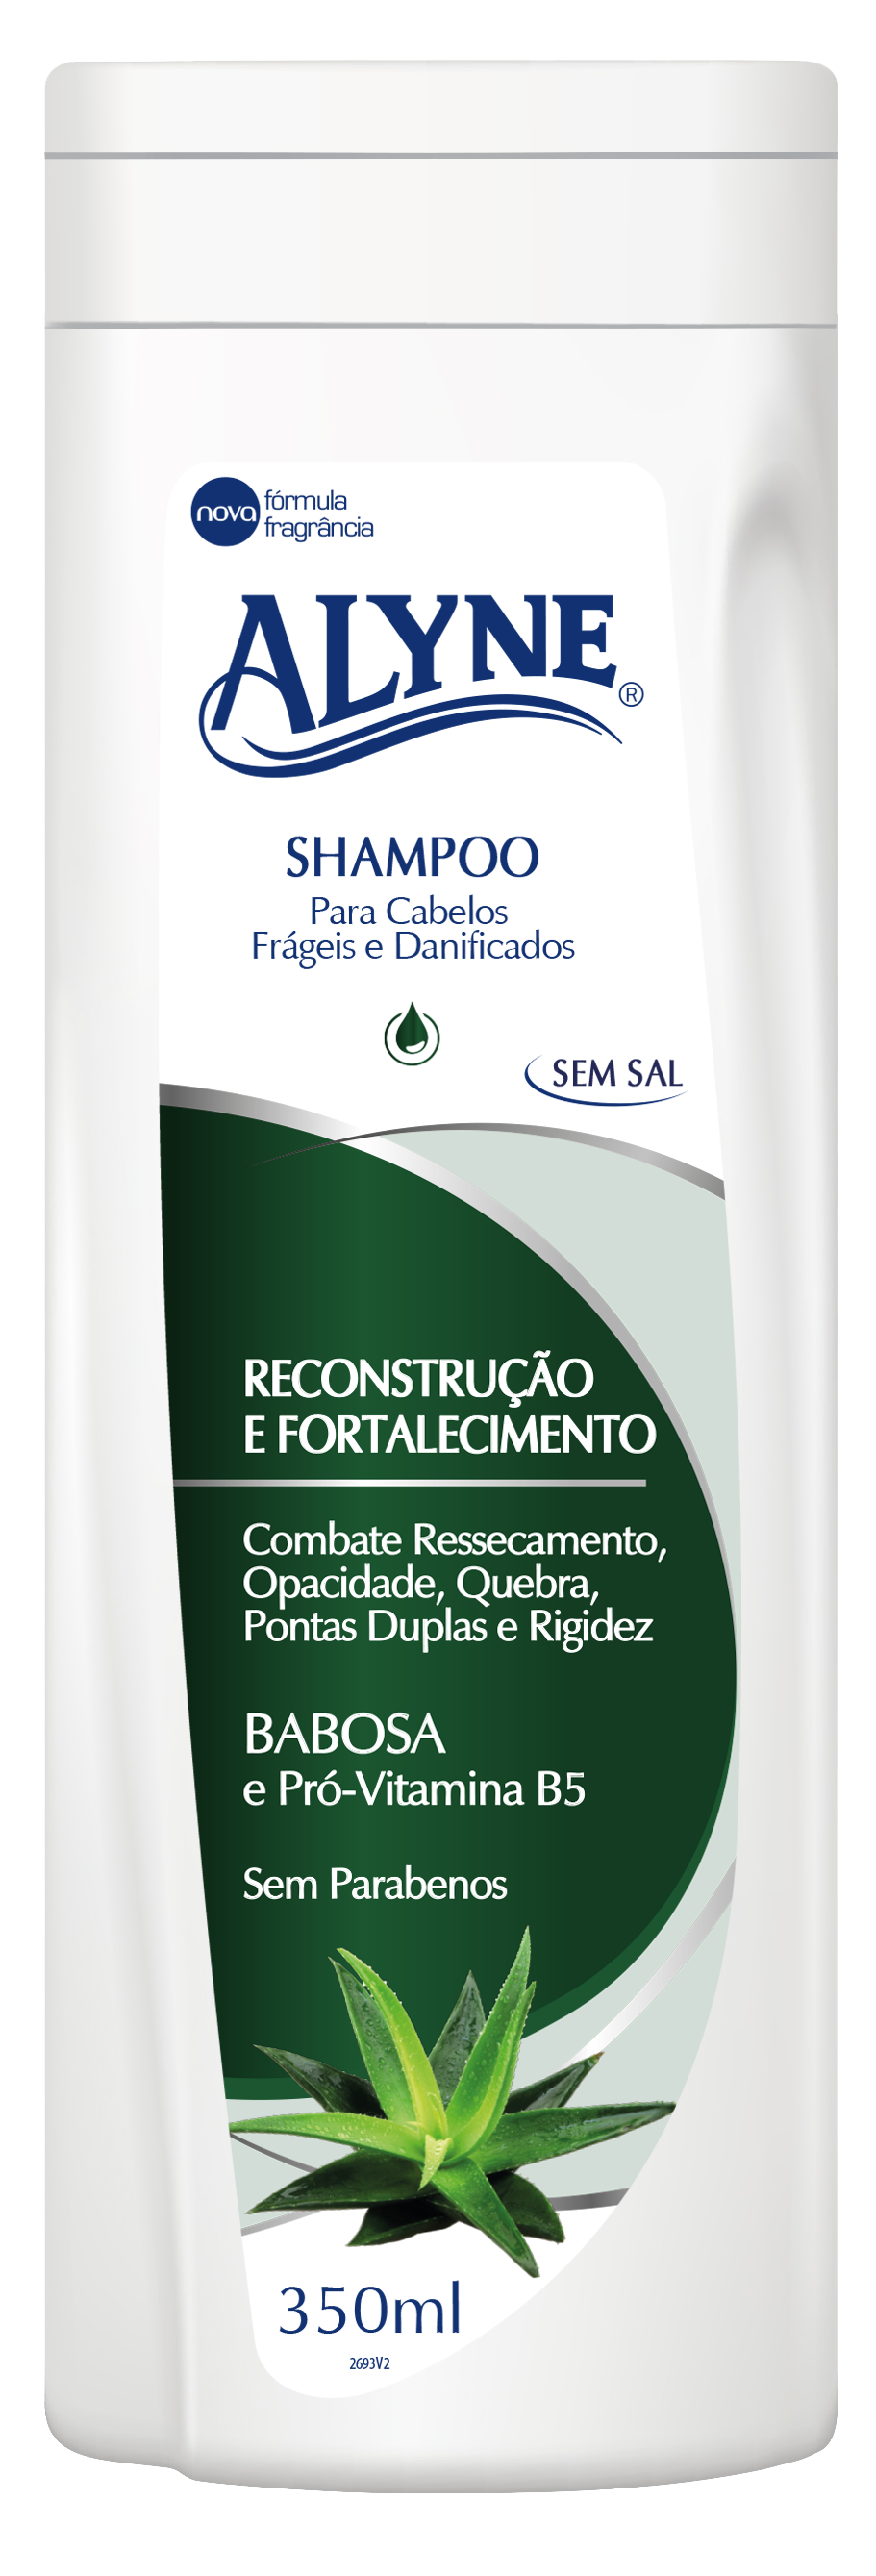 Shampoo Alyne Reconstrução e Fortalecimento 350ml